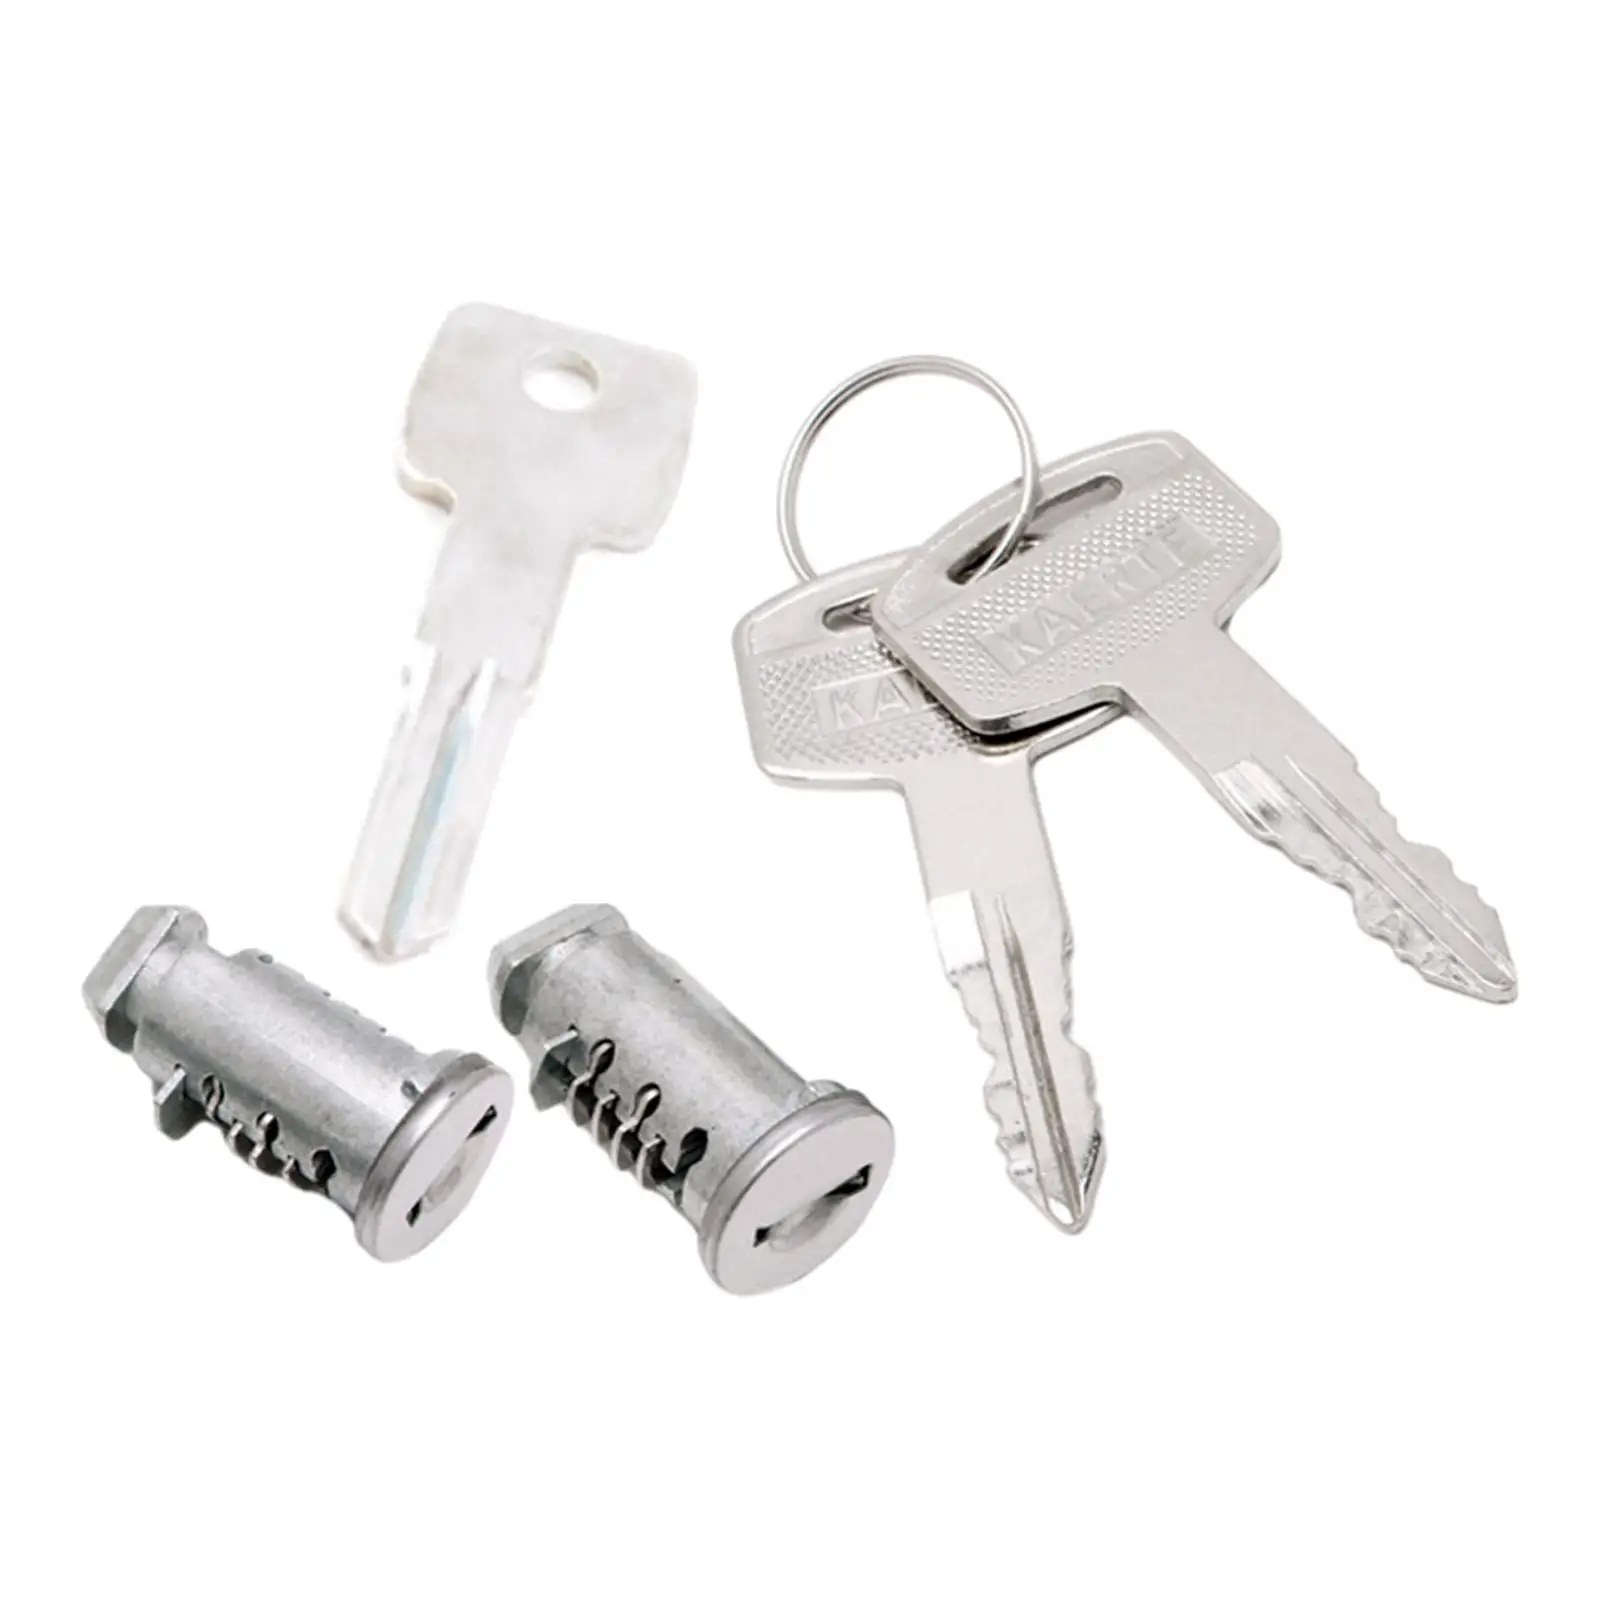 2x Lock Cylindes Accessory Locks Keys Roof Rack Locks Professional Cargo Bar Lock with Key for Car Rack Locks SUV